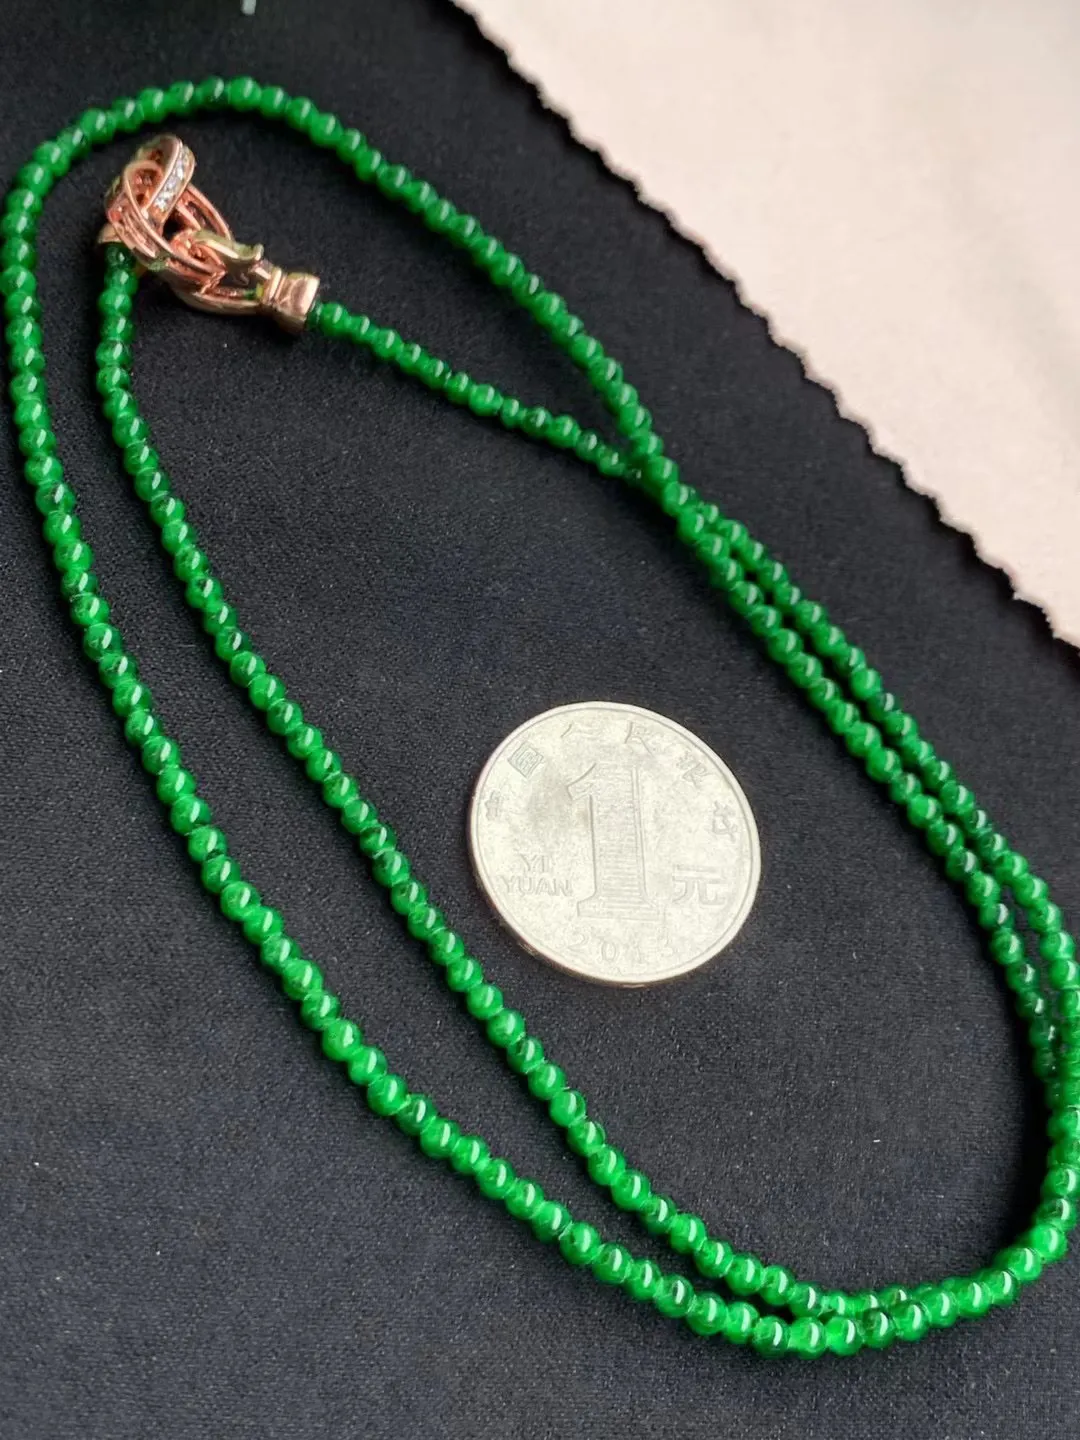 辣绿珠链

裸石3.1mm